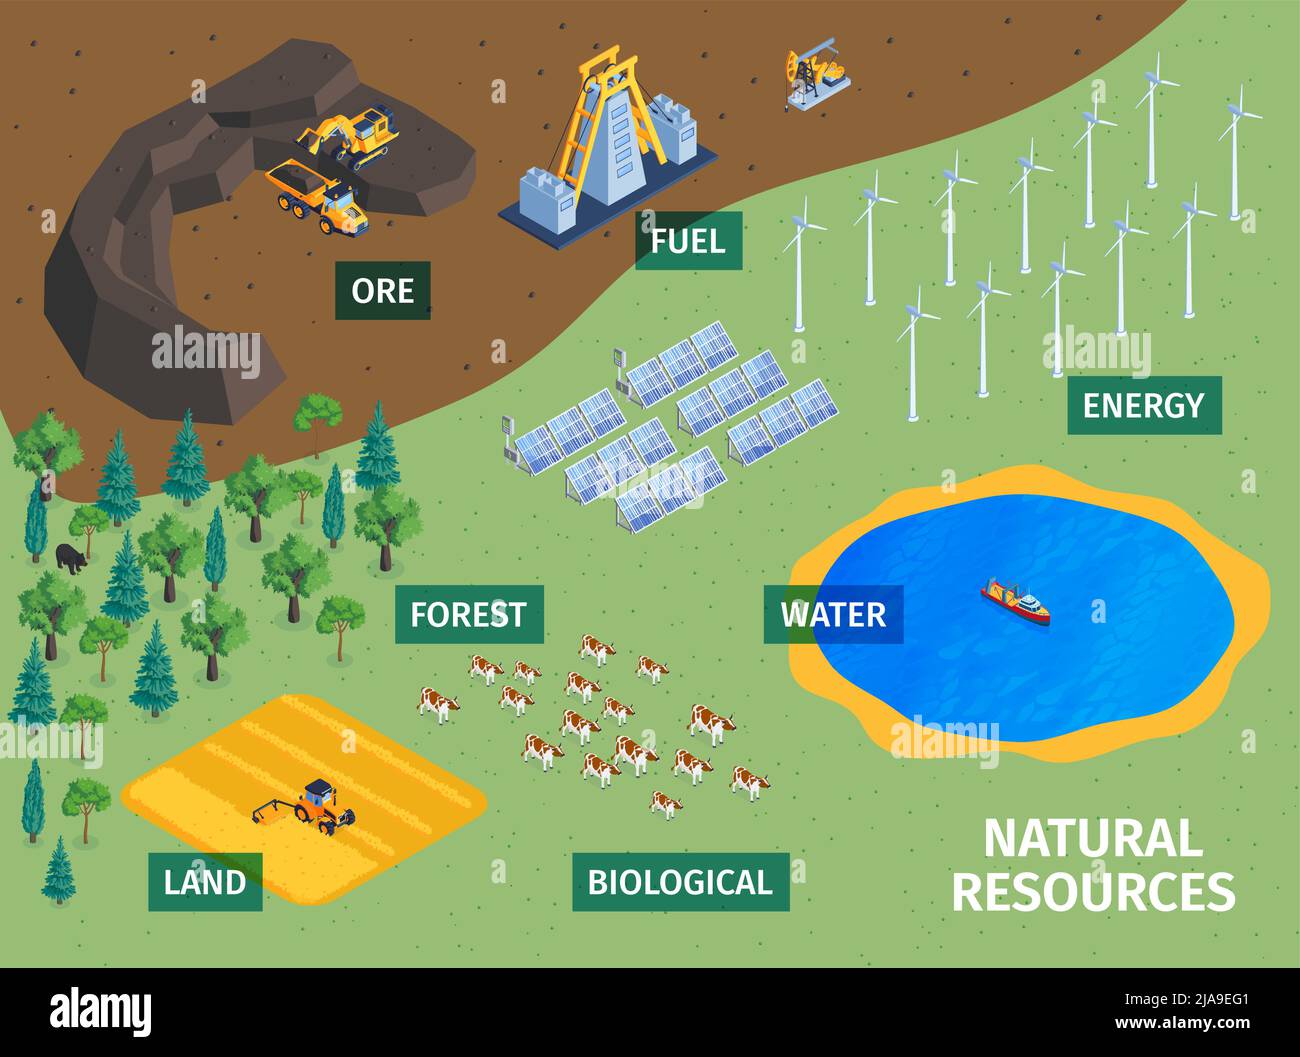 Natürliche Ressourcen Land Wald Pflanzen biologische Nutztiere Erz Kraftstoff Solar Windenergie Wasser isometrisches Konzept Vektor Illustration Stock Vektor